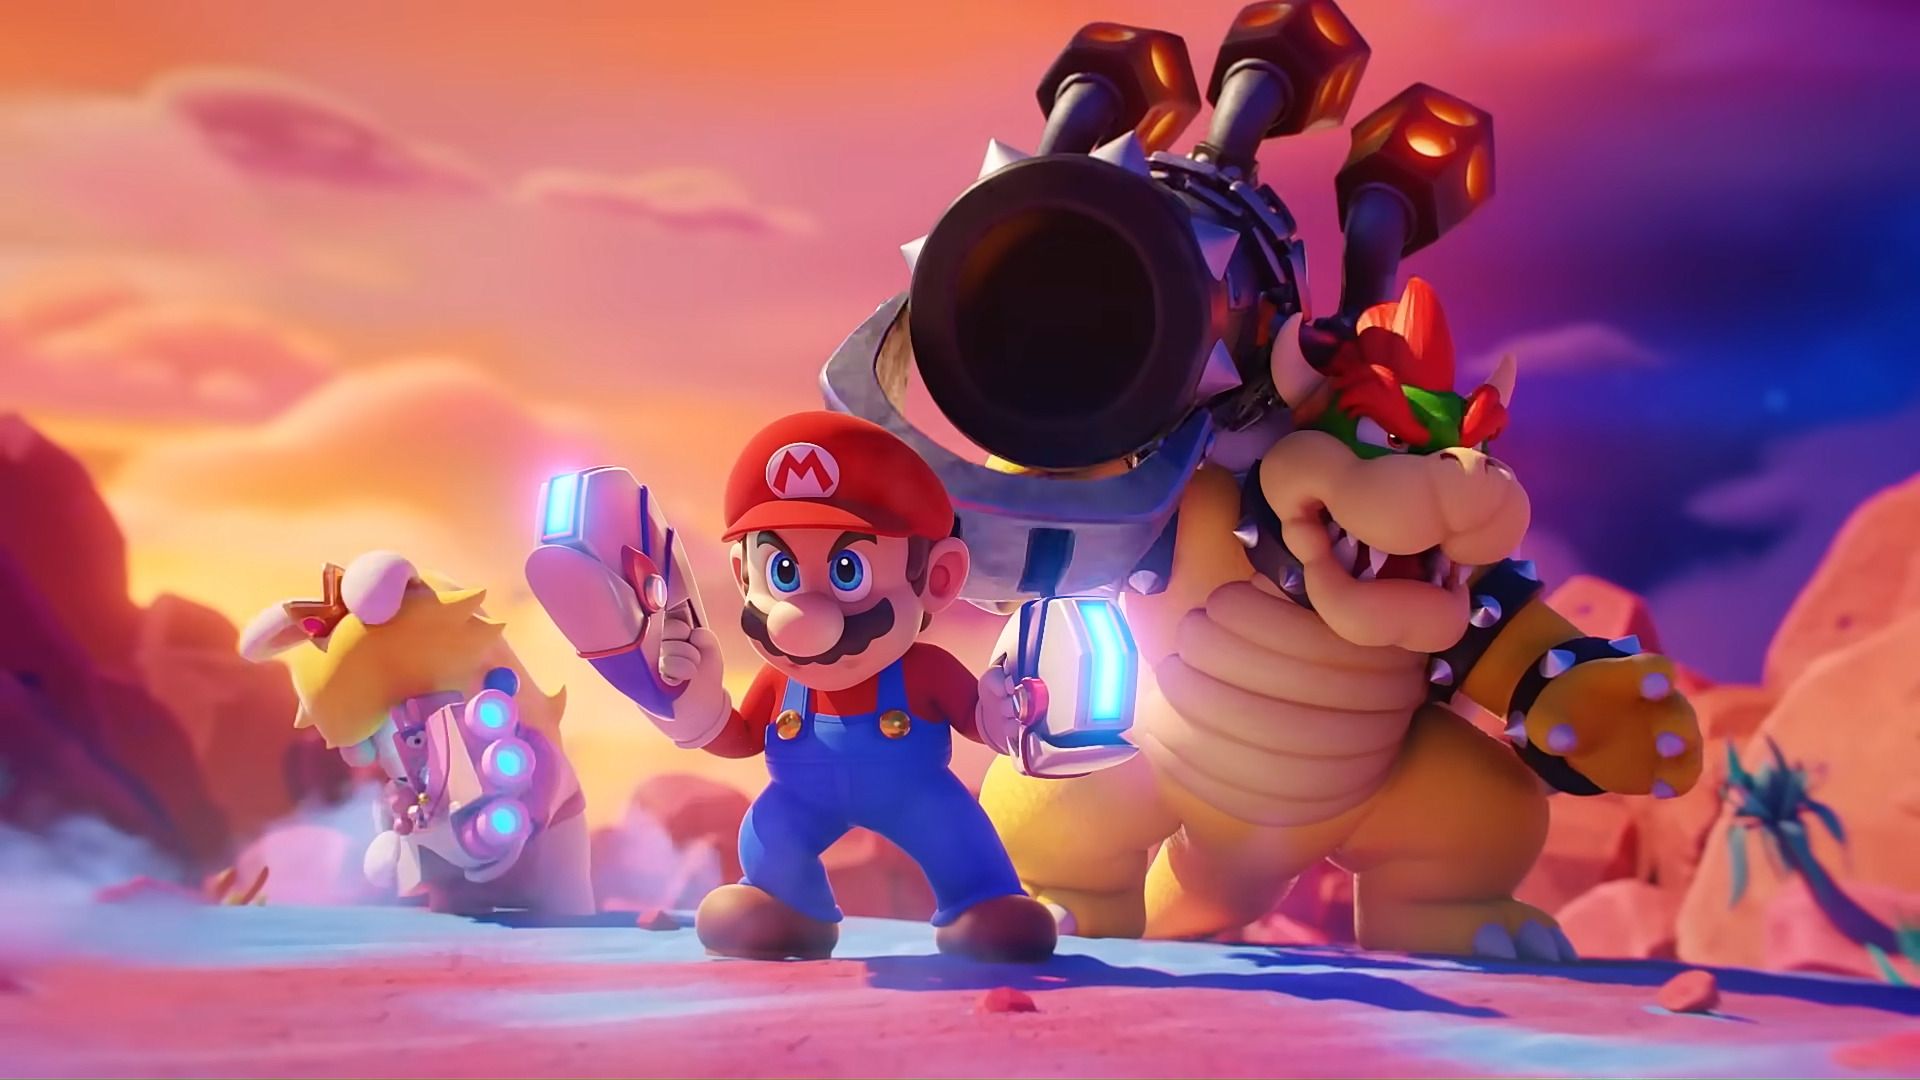 #Medienecho zu Mario + Rabbids: Sparks of Hope: „Wenn Nintendo sein Spielzeug teilt“